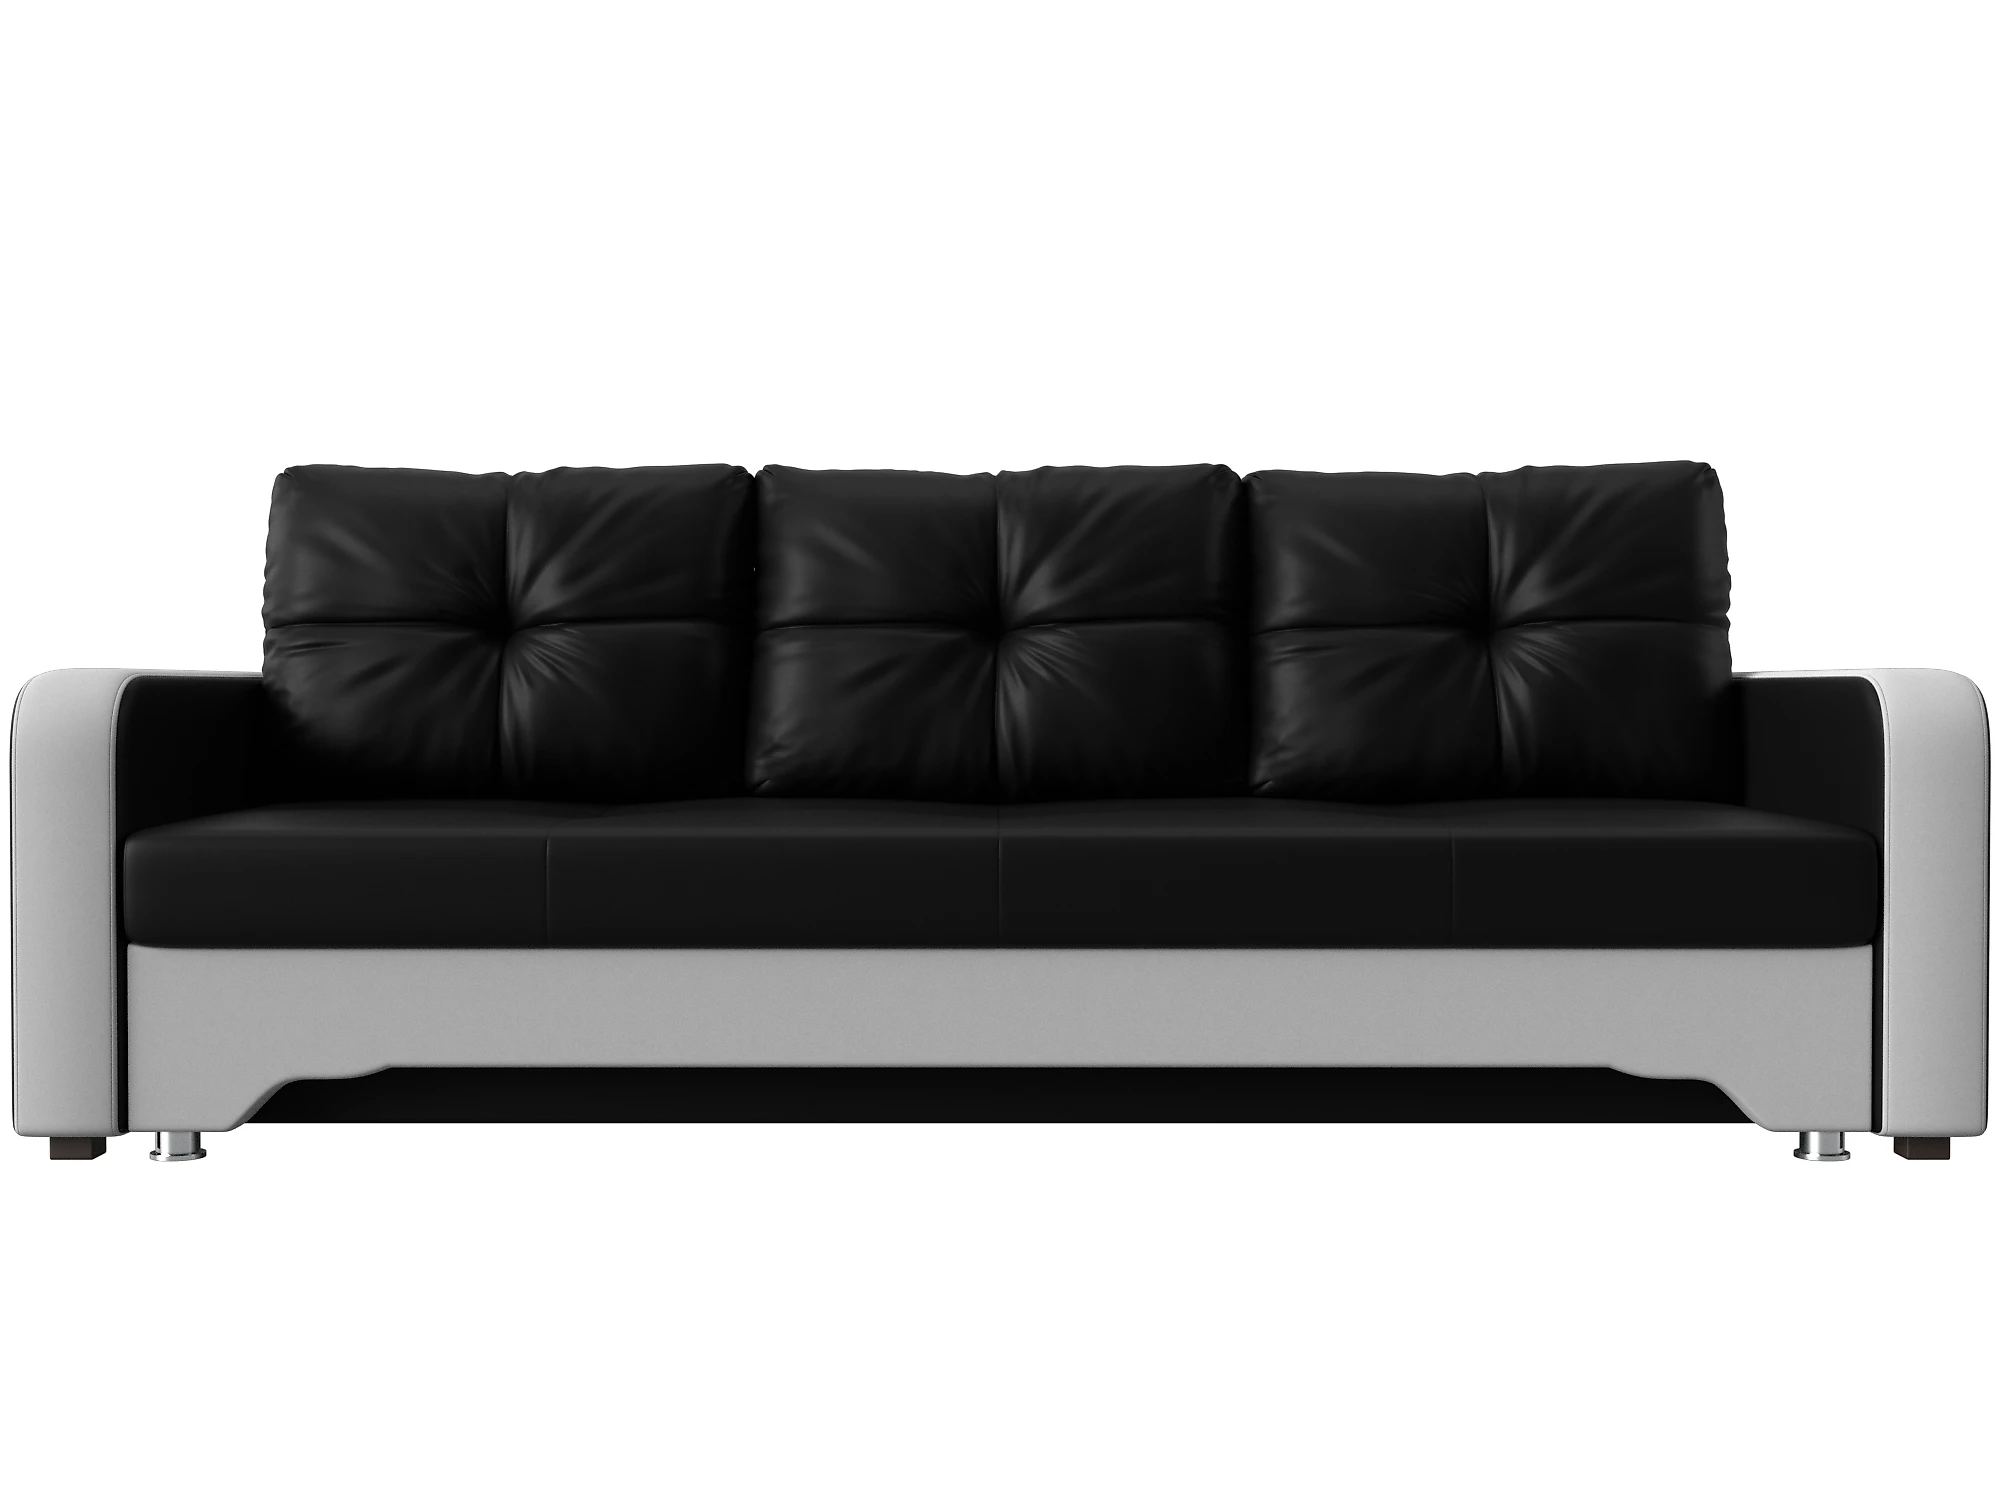  кожаный диван еврокнижка Ник-3 Дизайн 28